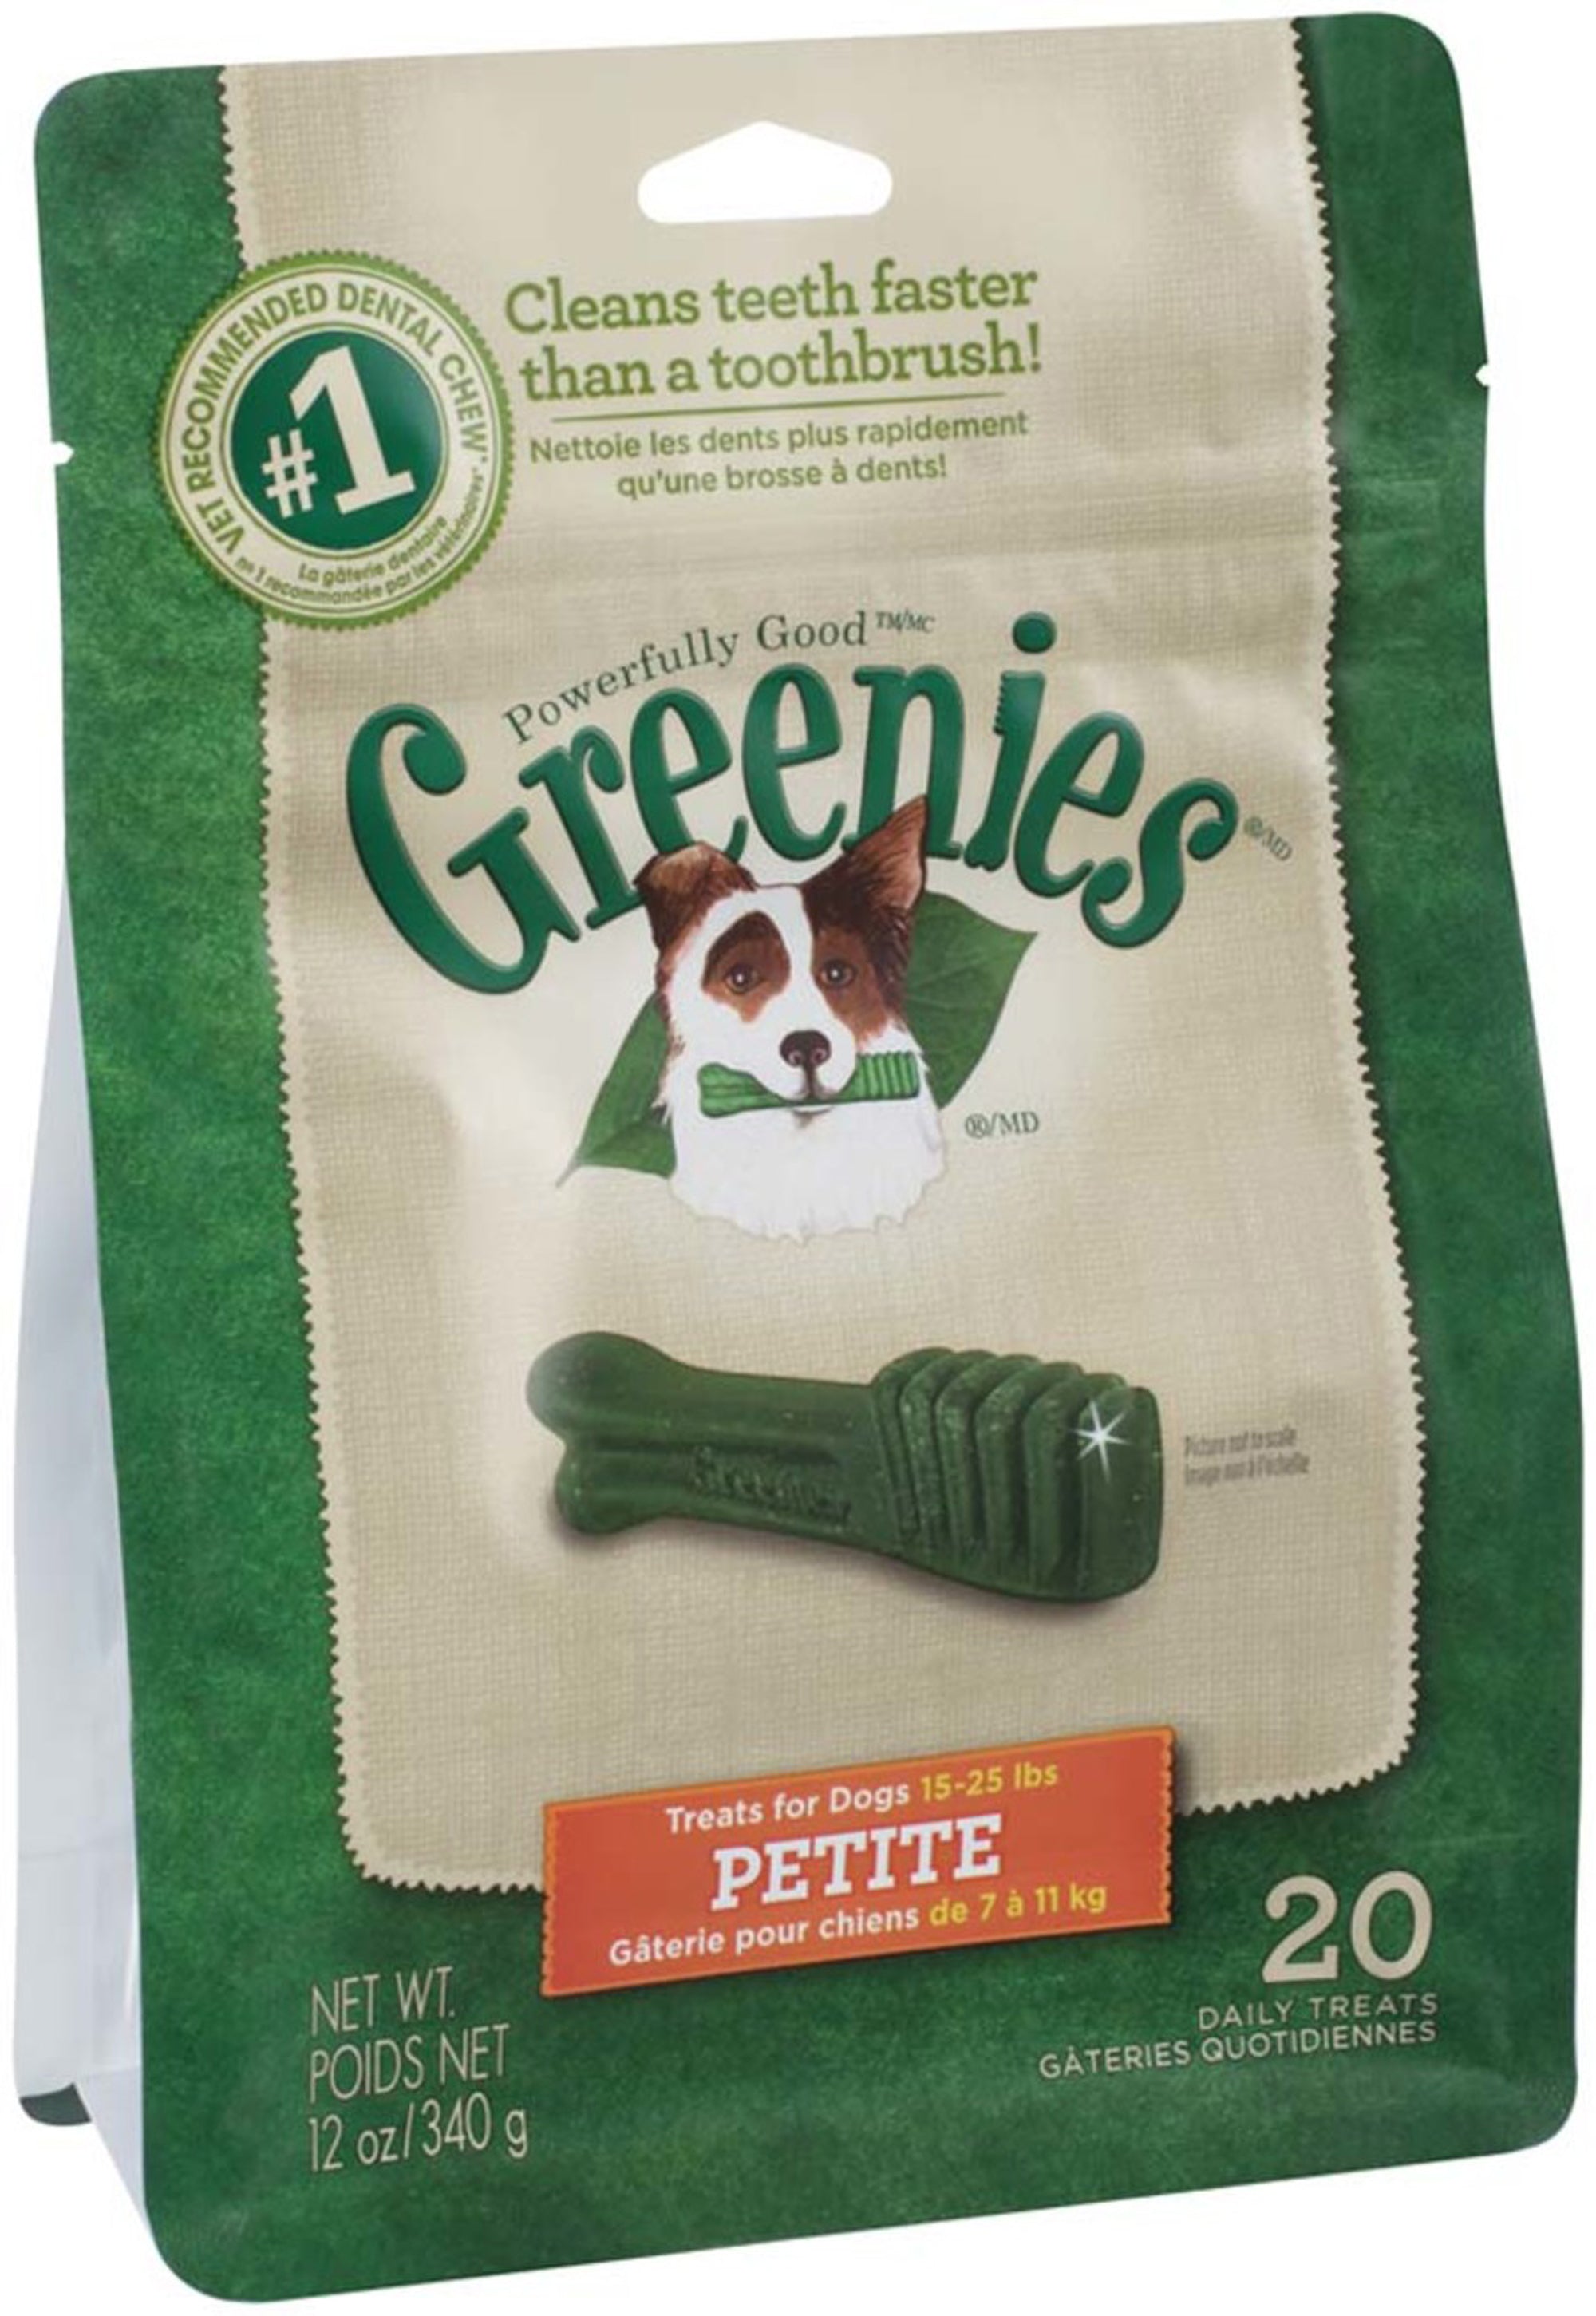 Greenies Dog Dental Treats Petite Original 1ea/12 oz, 20 ct